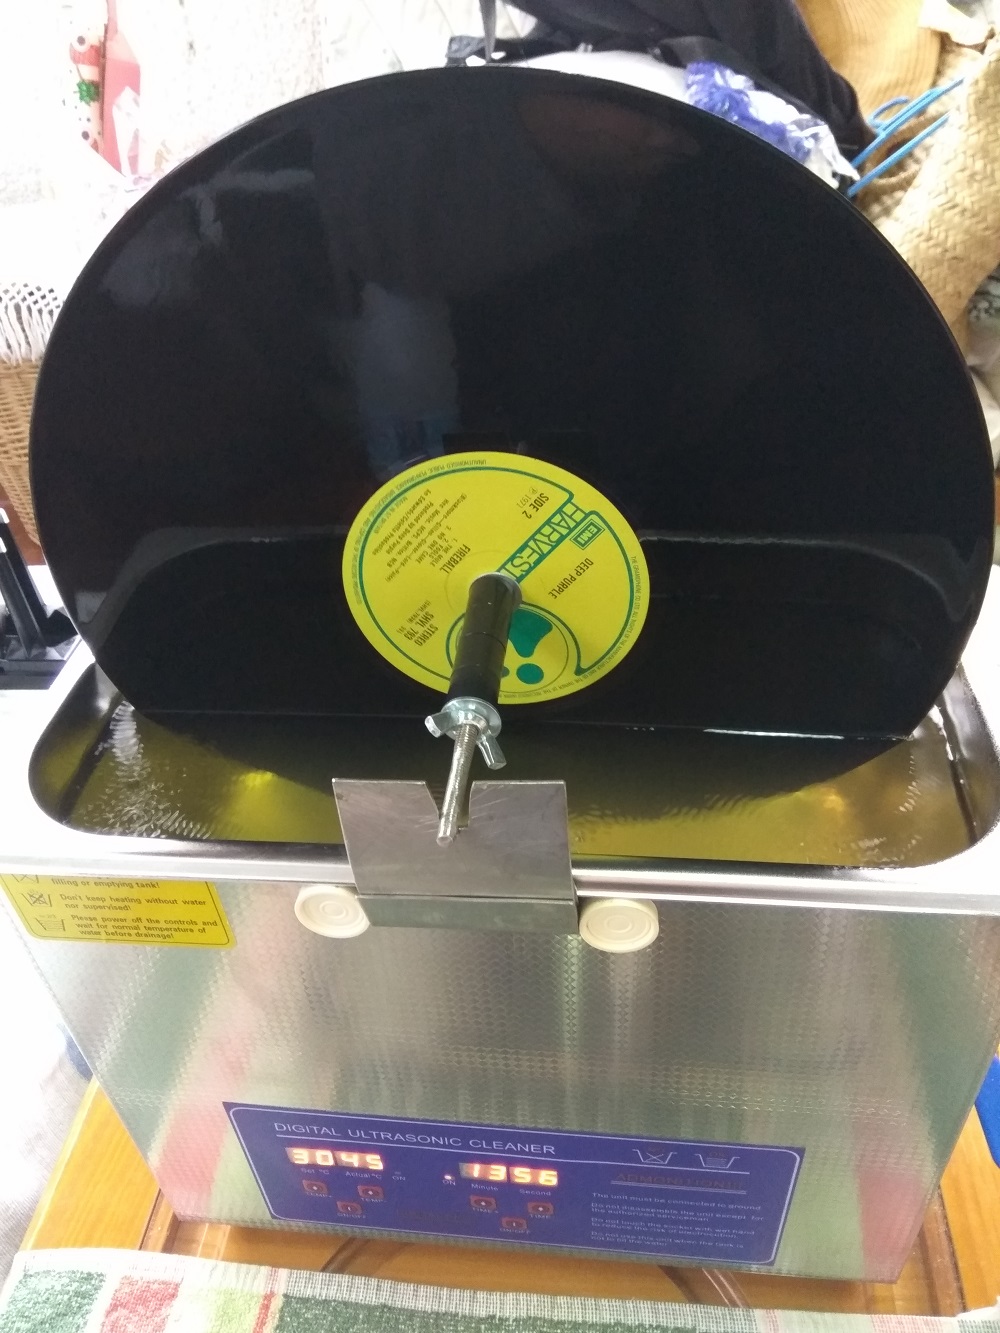 Maquina de lavar discos de vinil (LP) - Página 2 Img_2017